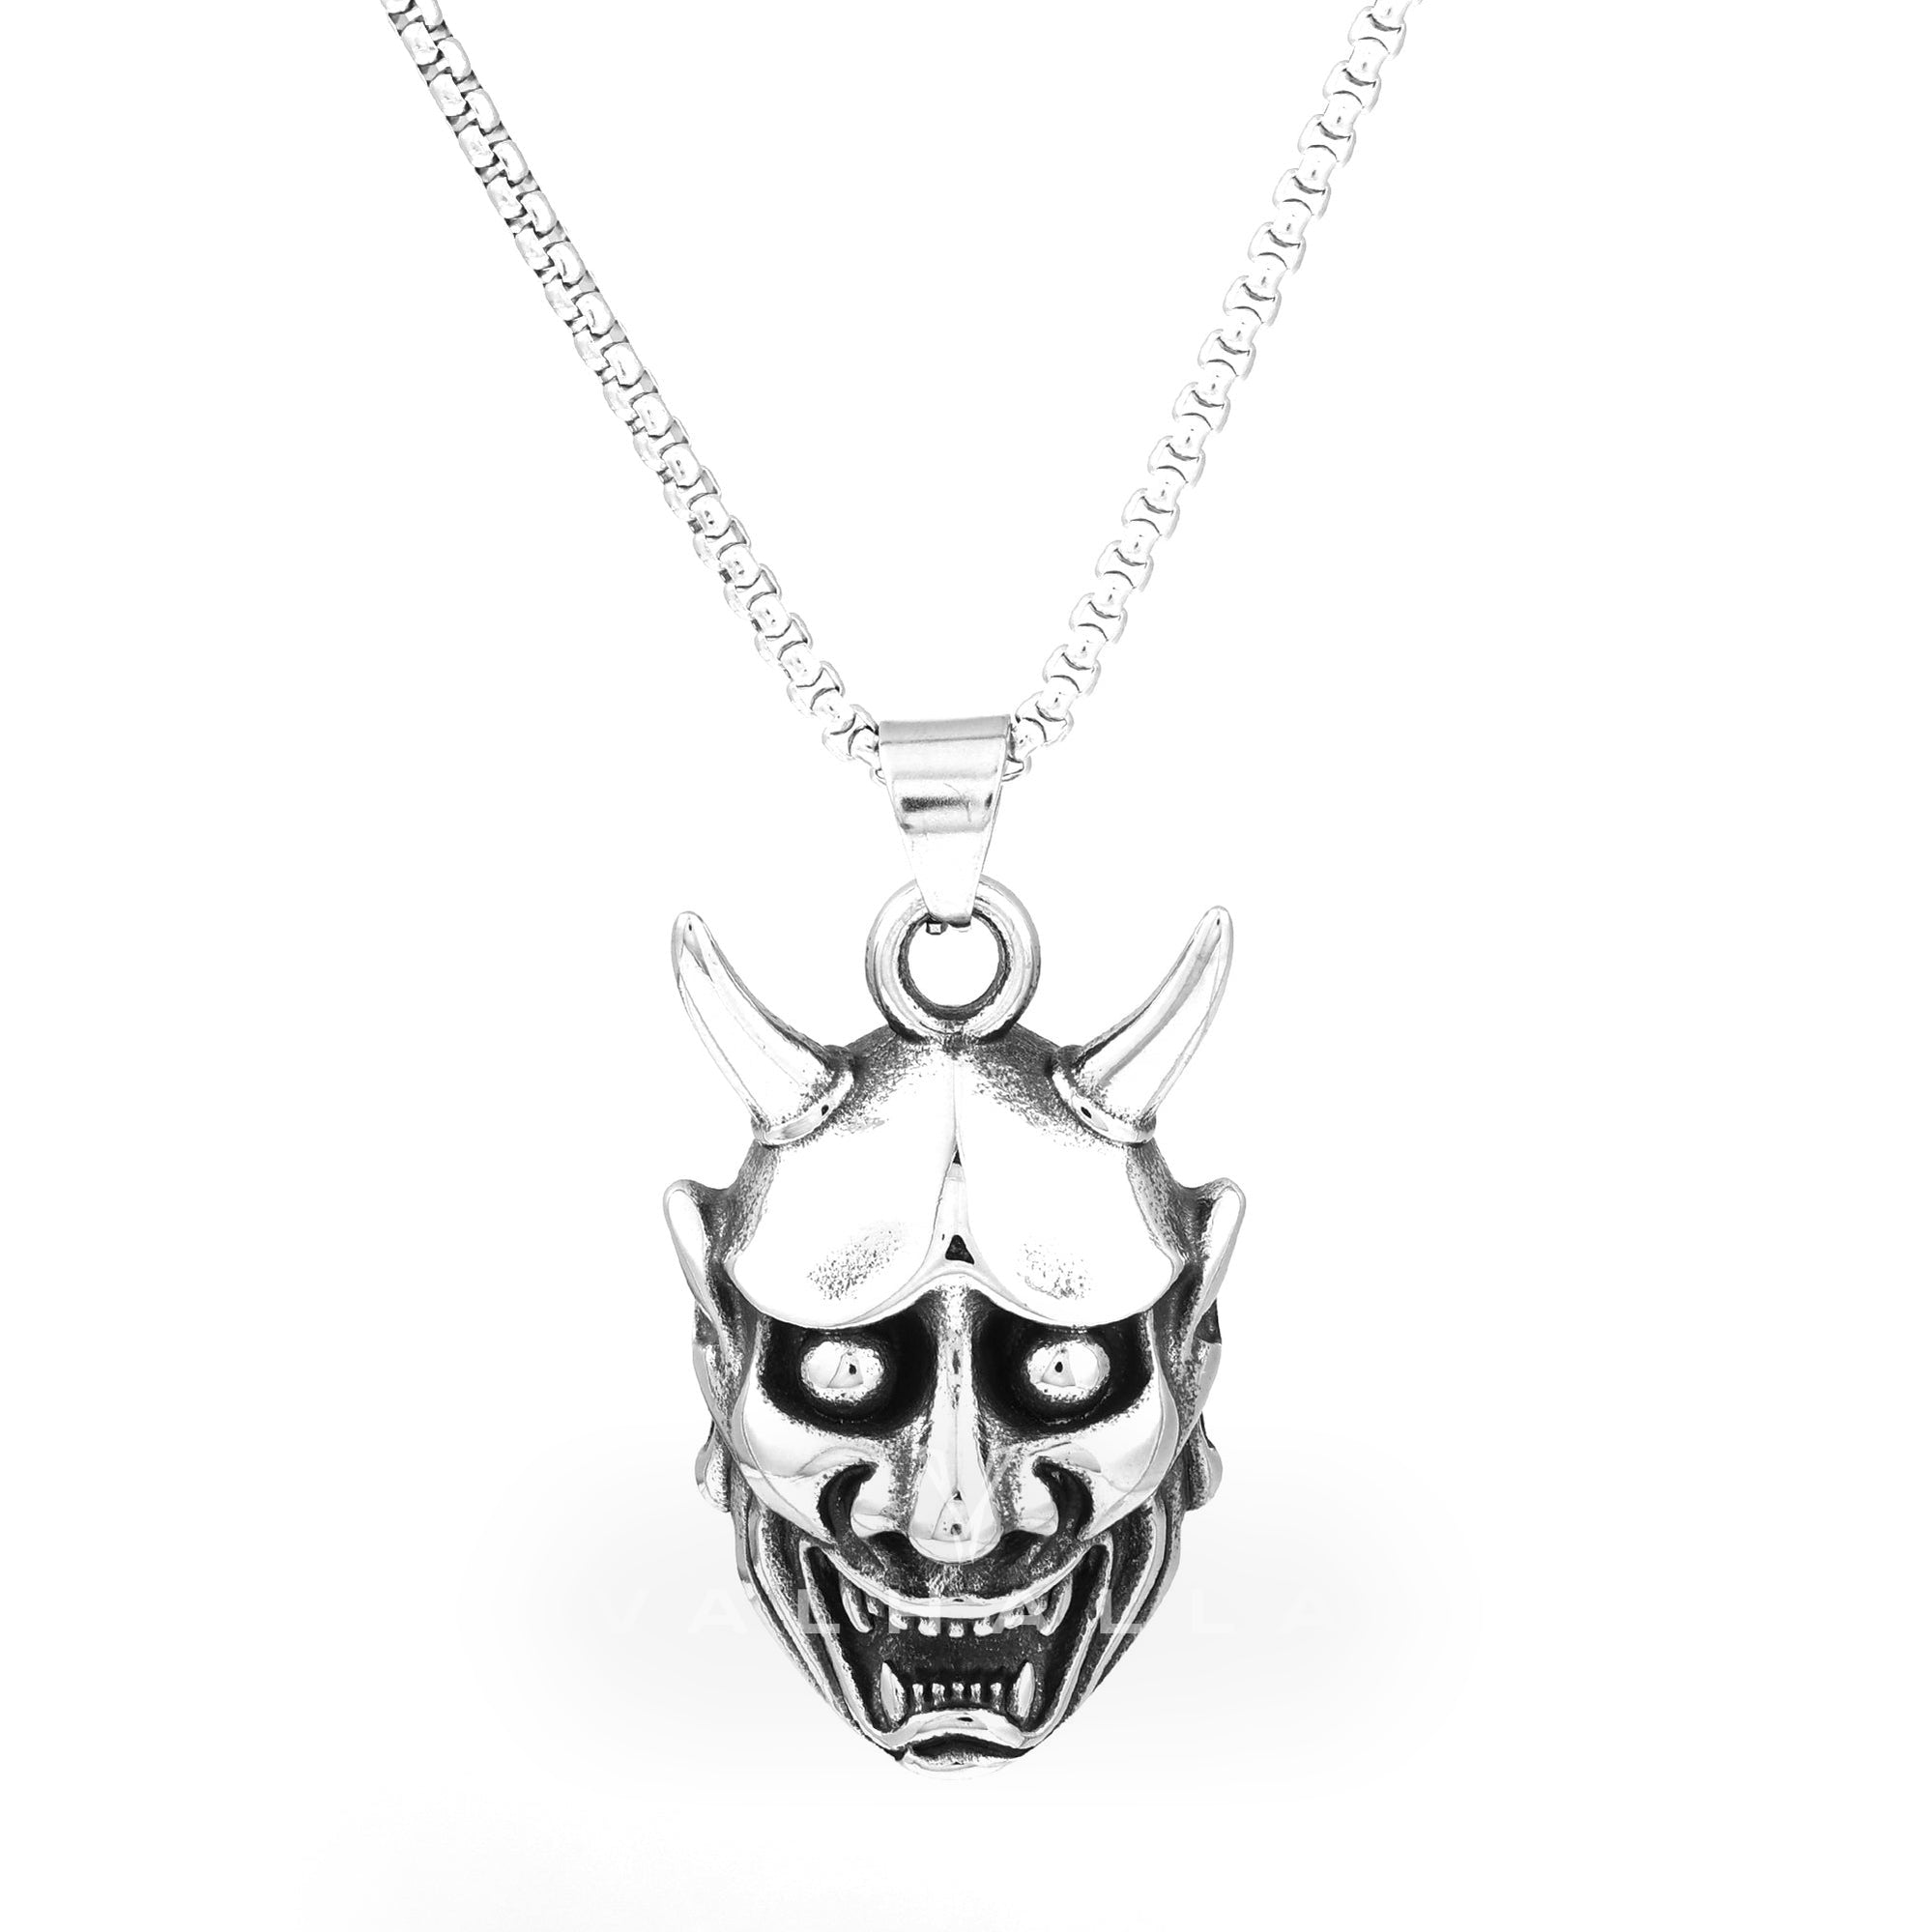 Demon Oni Skull Pendant & Chain Stainless Steel